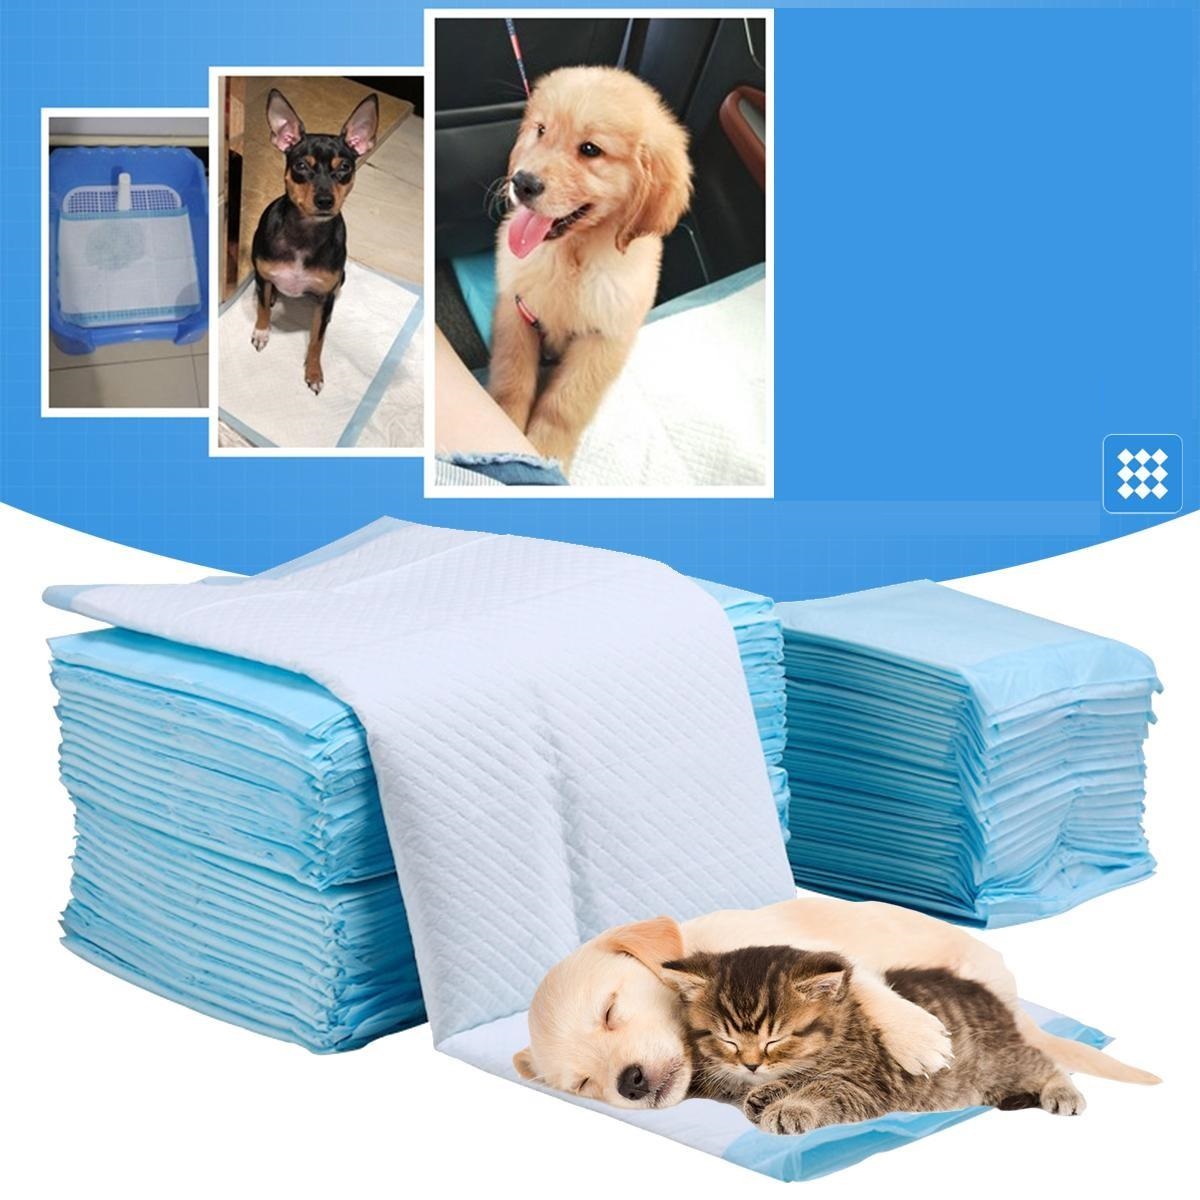 Tã giấy vệ sinh cho chó - dùng lót khay vệ sinh chó hoặc lót chuồng chó